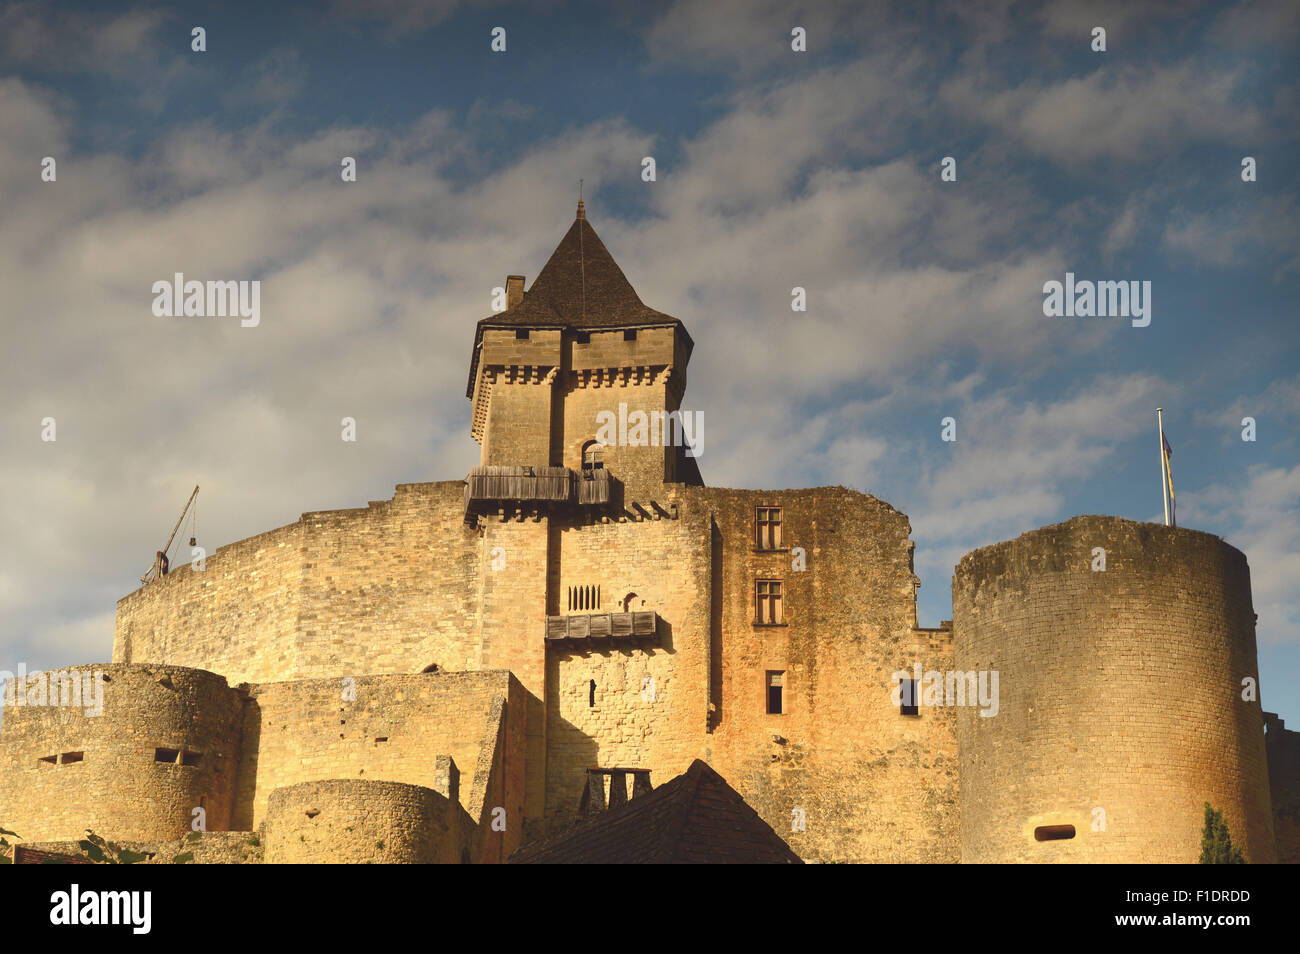 Chateau de Casteneau-la-Chapelle, Dordogne Region, France Stock Photo